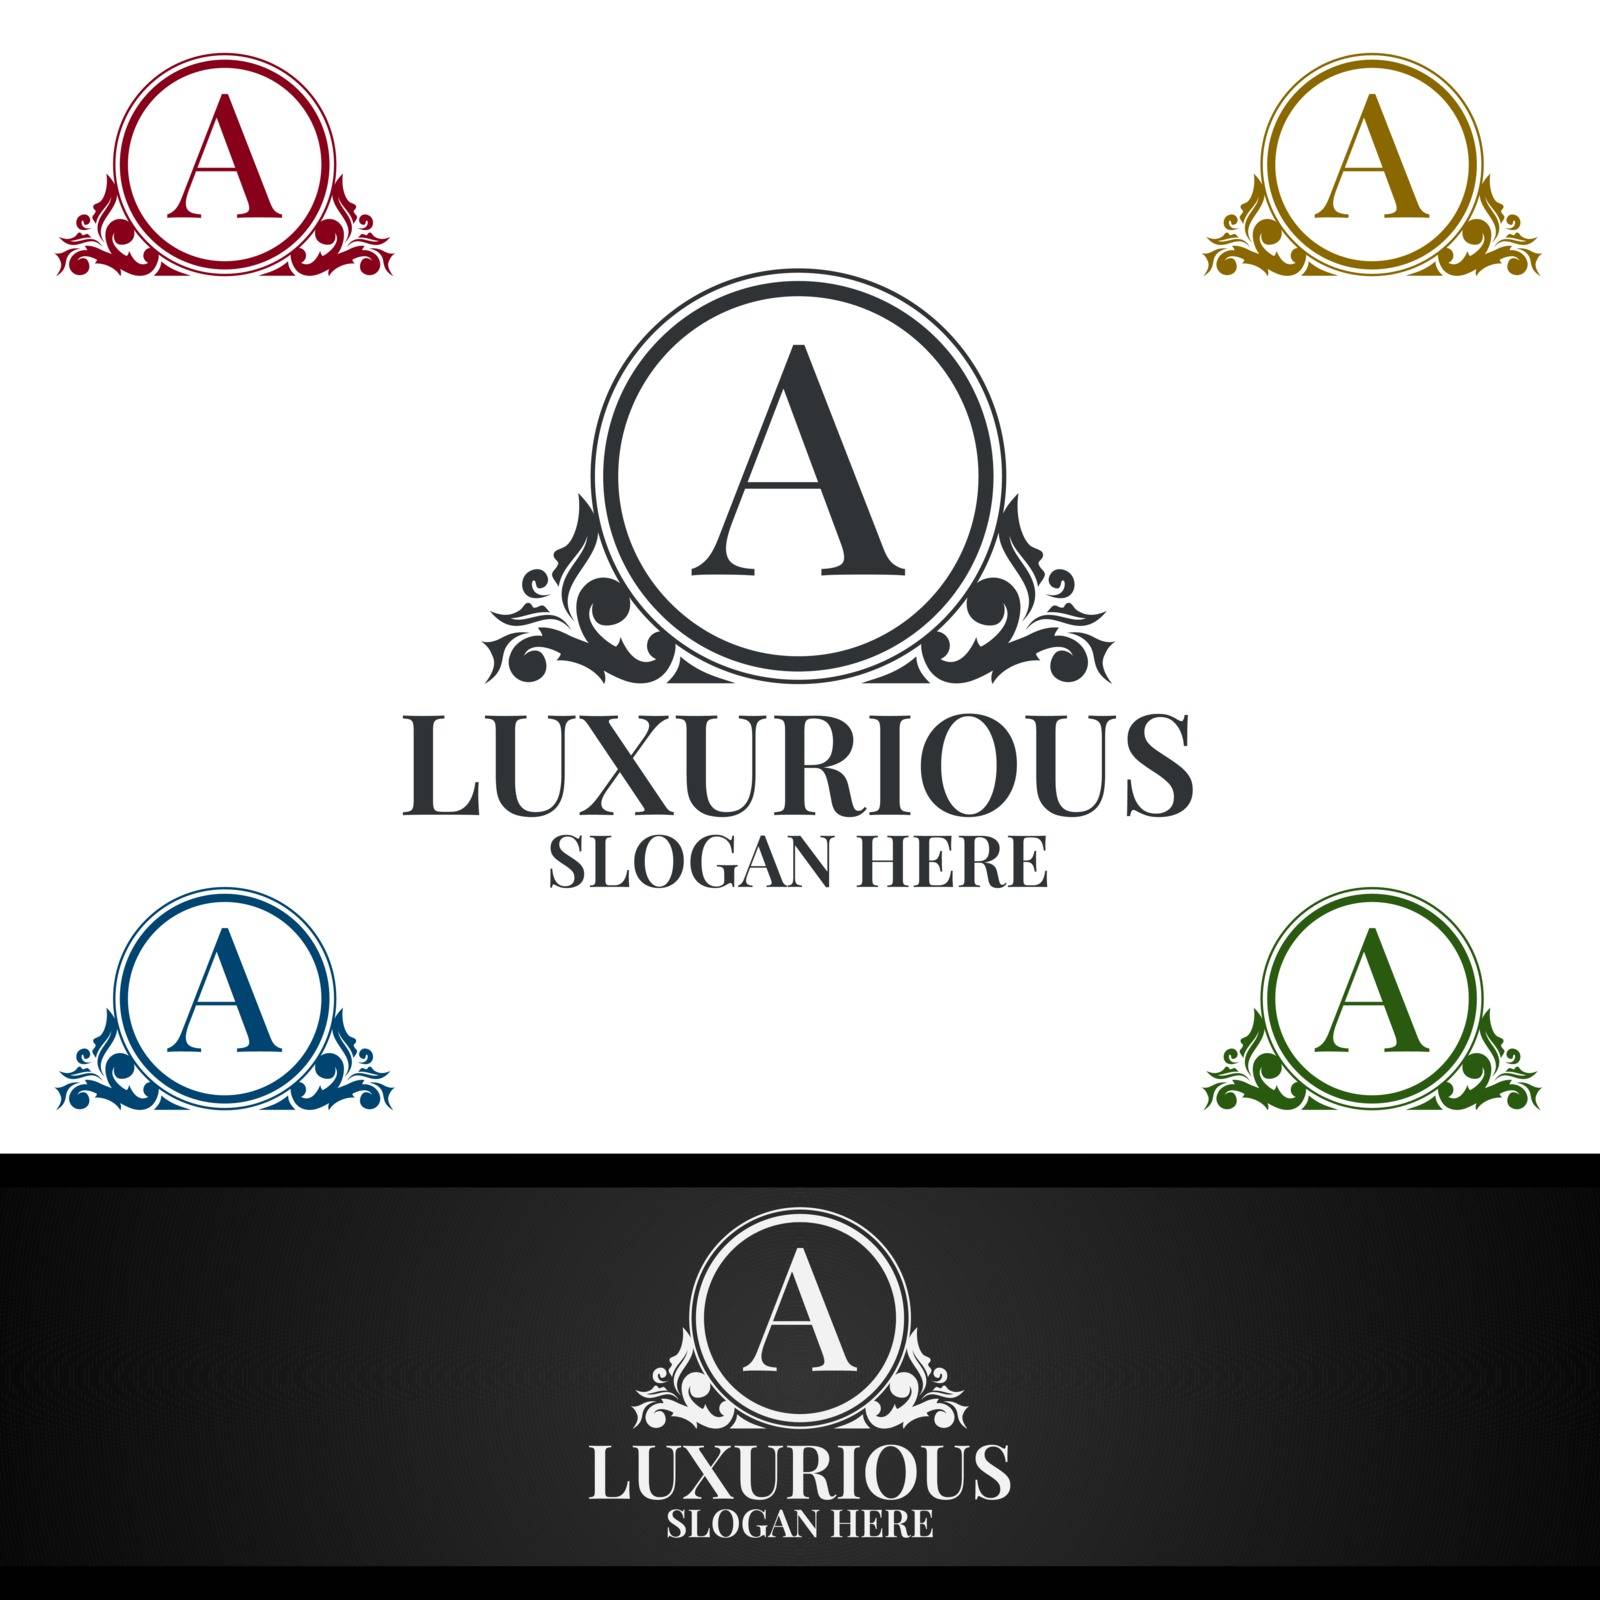 Luxurious Royal Logo for Jewelry, Wedding, Hotel or Fashion by denayuneyi